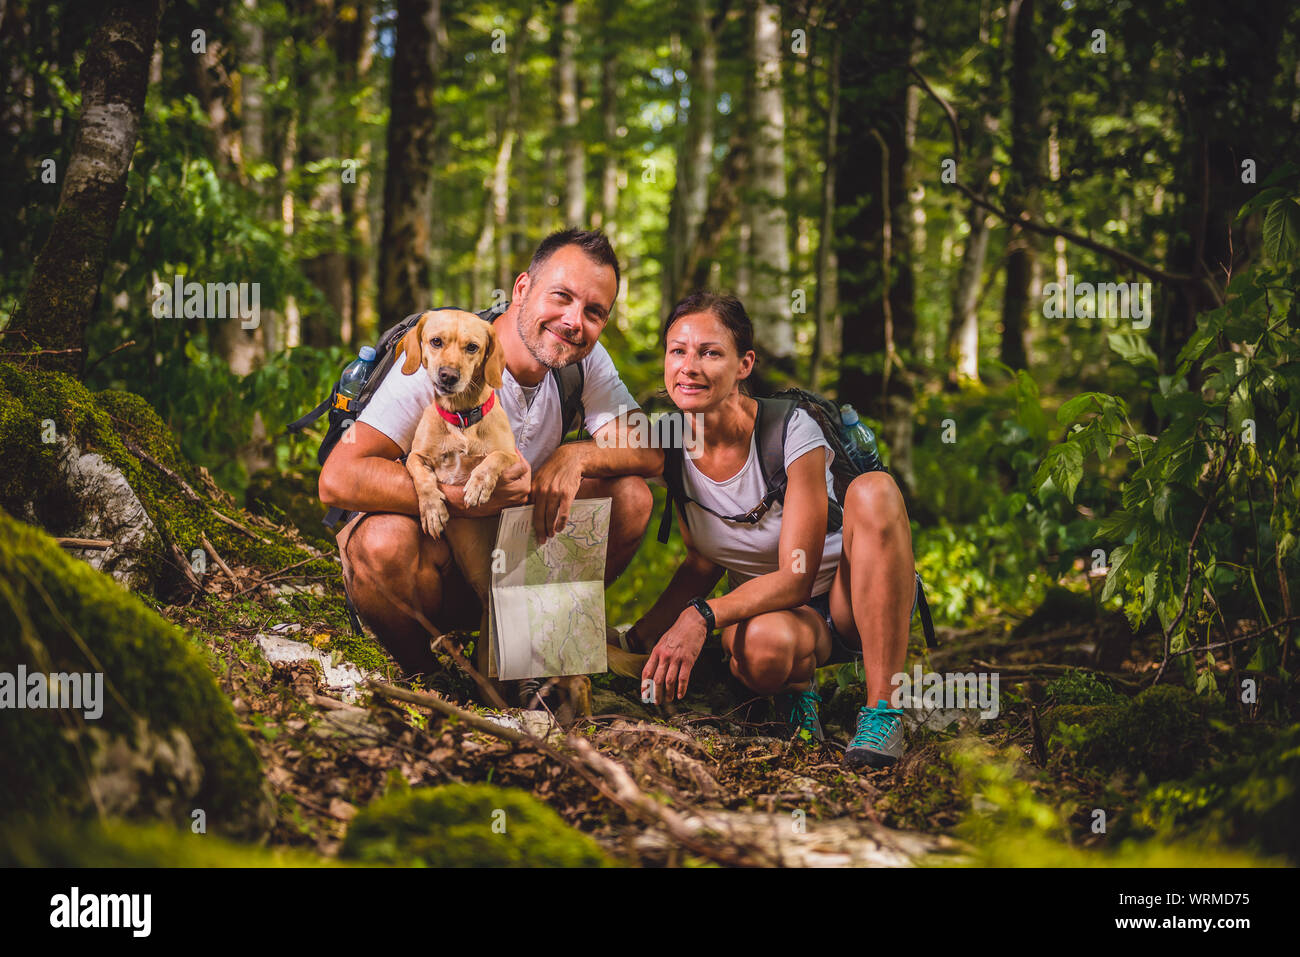 Randonnées couple avec petit chien jaune posing in forest Banque D'Images